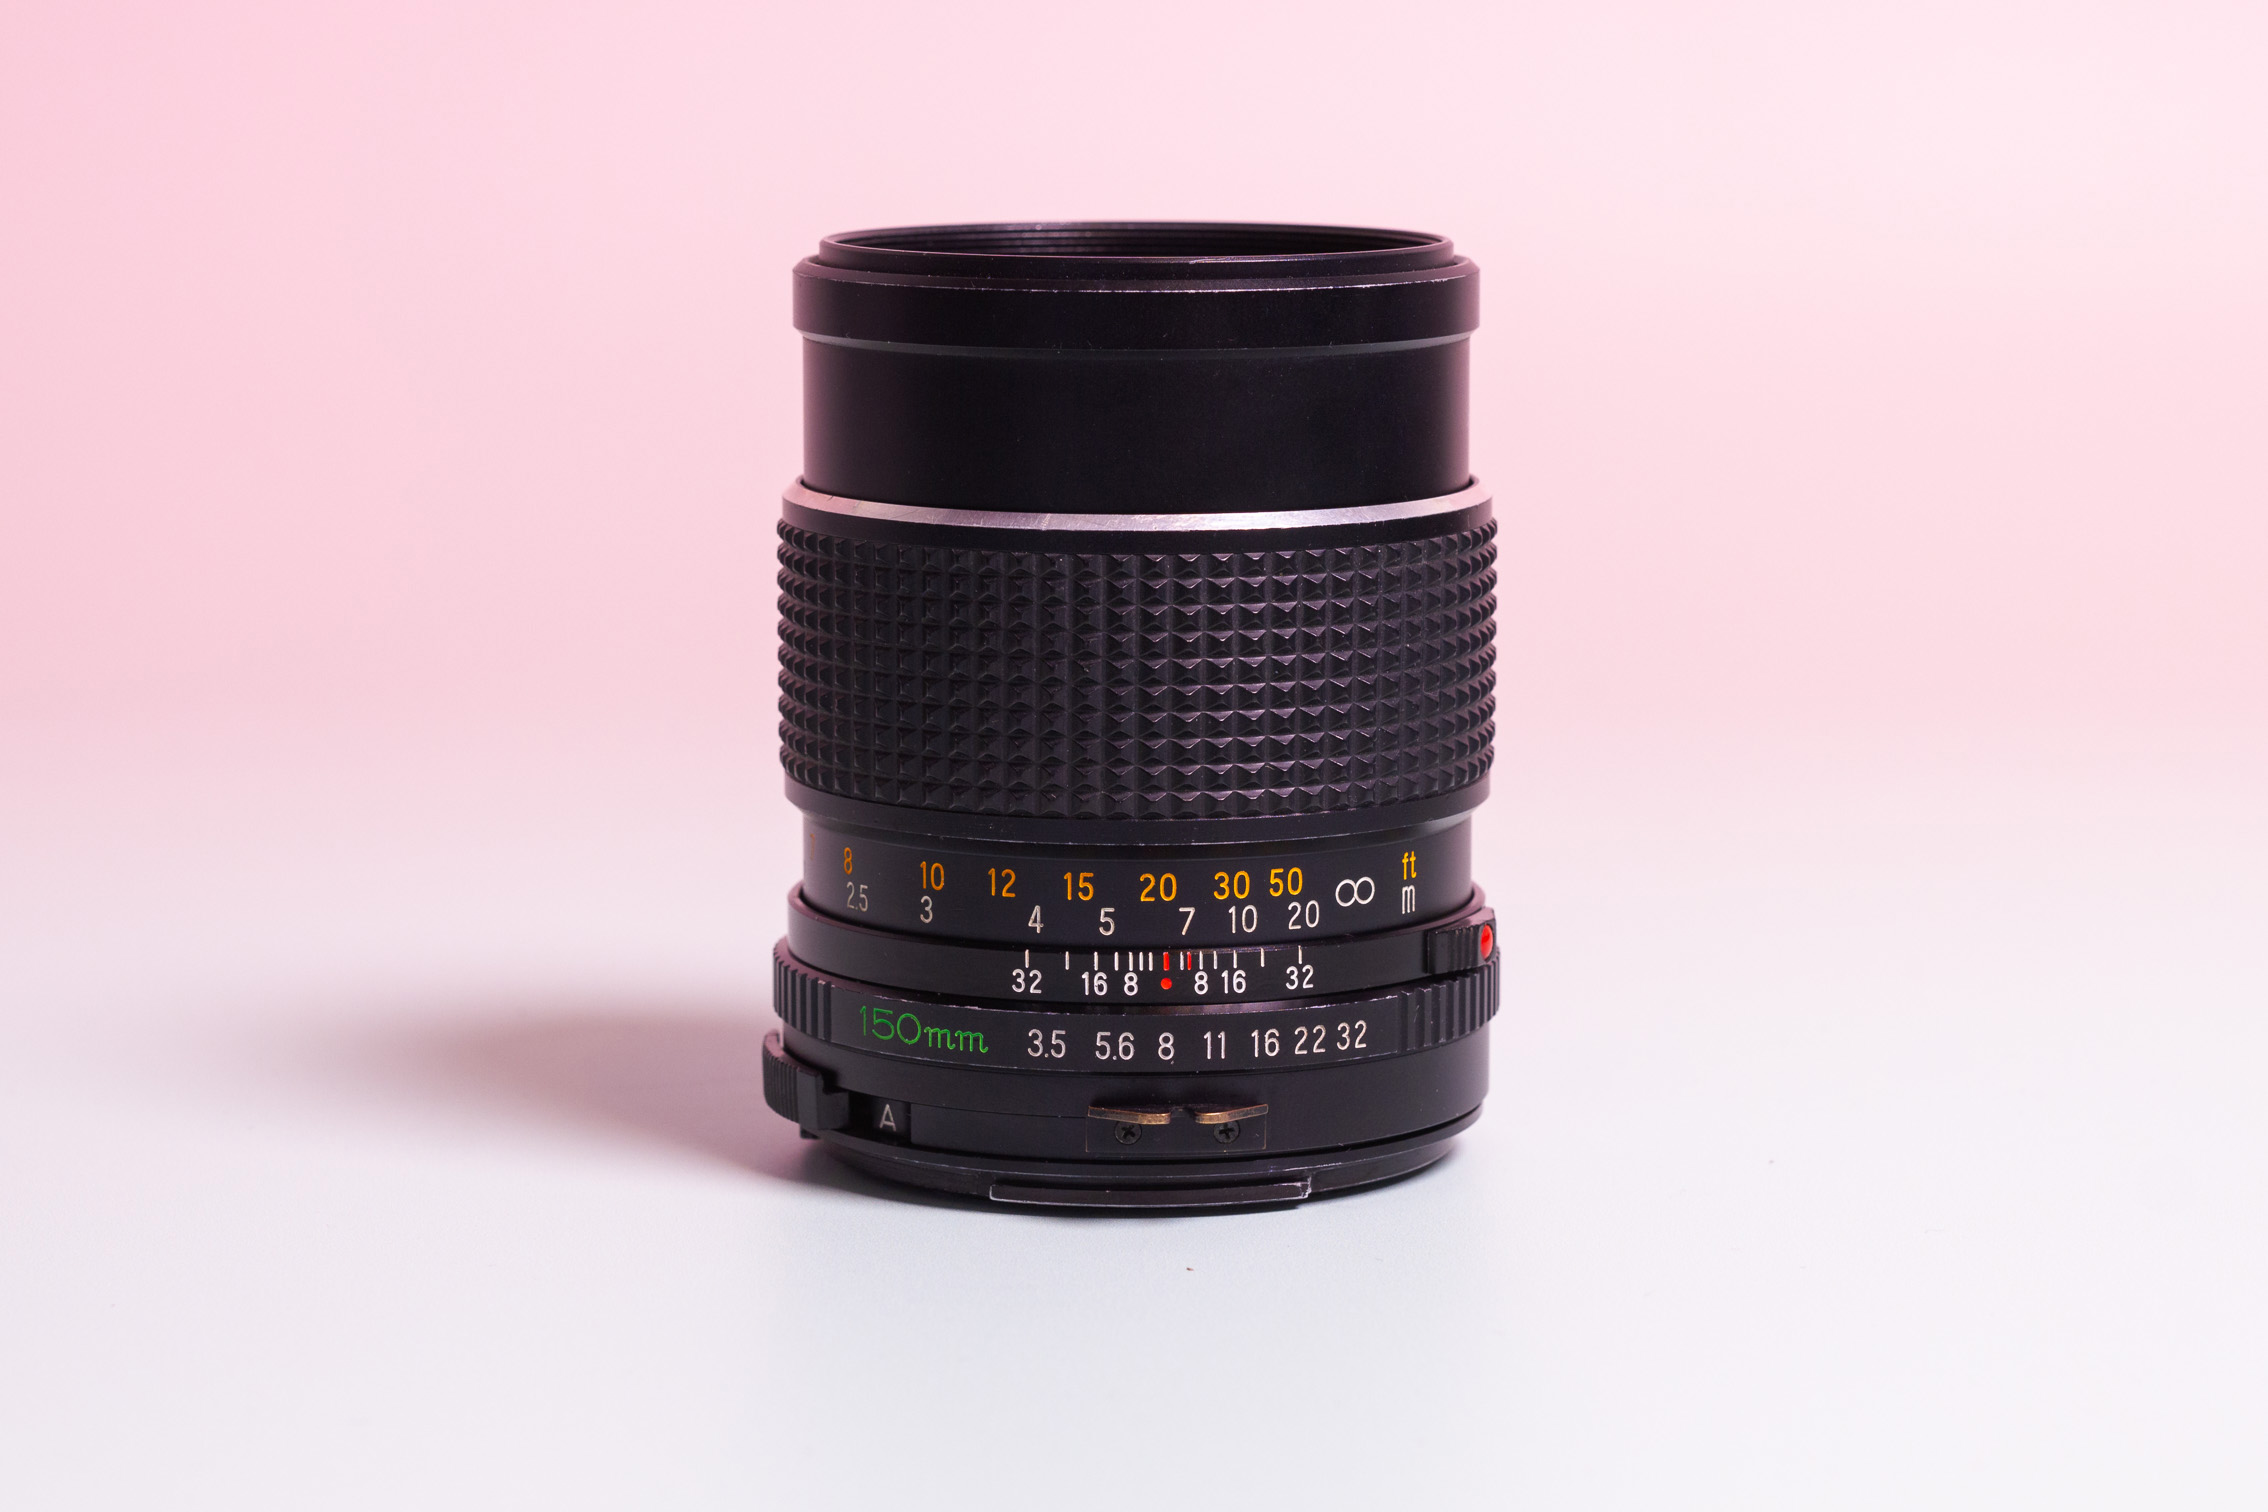 Mamiya 645 Sekor C 150mm f3.5 lens – Camera Revival